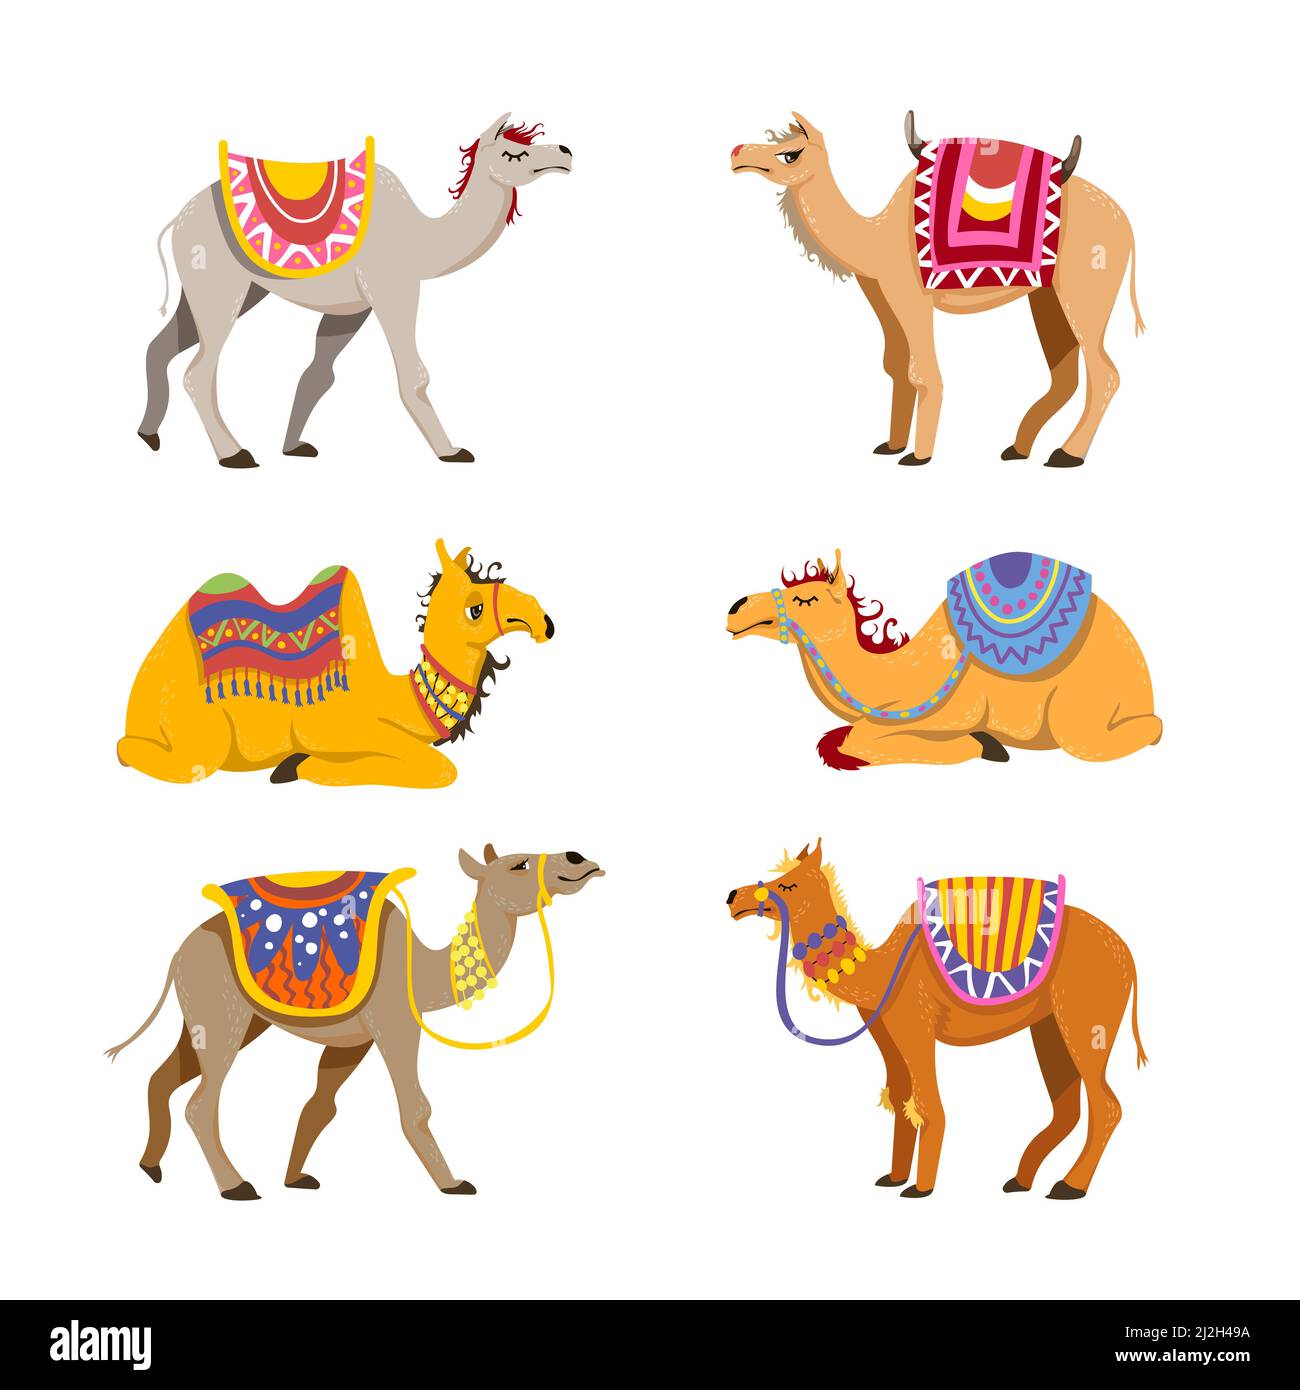 Kamel Set für Wüstenkarawane. Cartoon-Vektorgrafiken. Gruppe von niedlichen baktrischen und Dromedarkamelen isoliert auf weißem Hintergrund. Lustige Tiere mit Stock Vektor